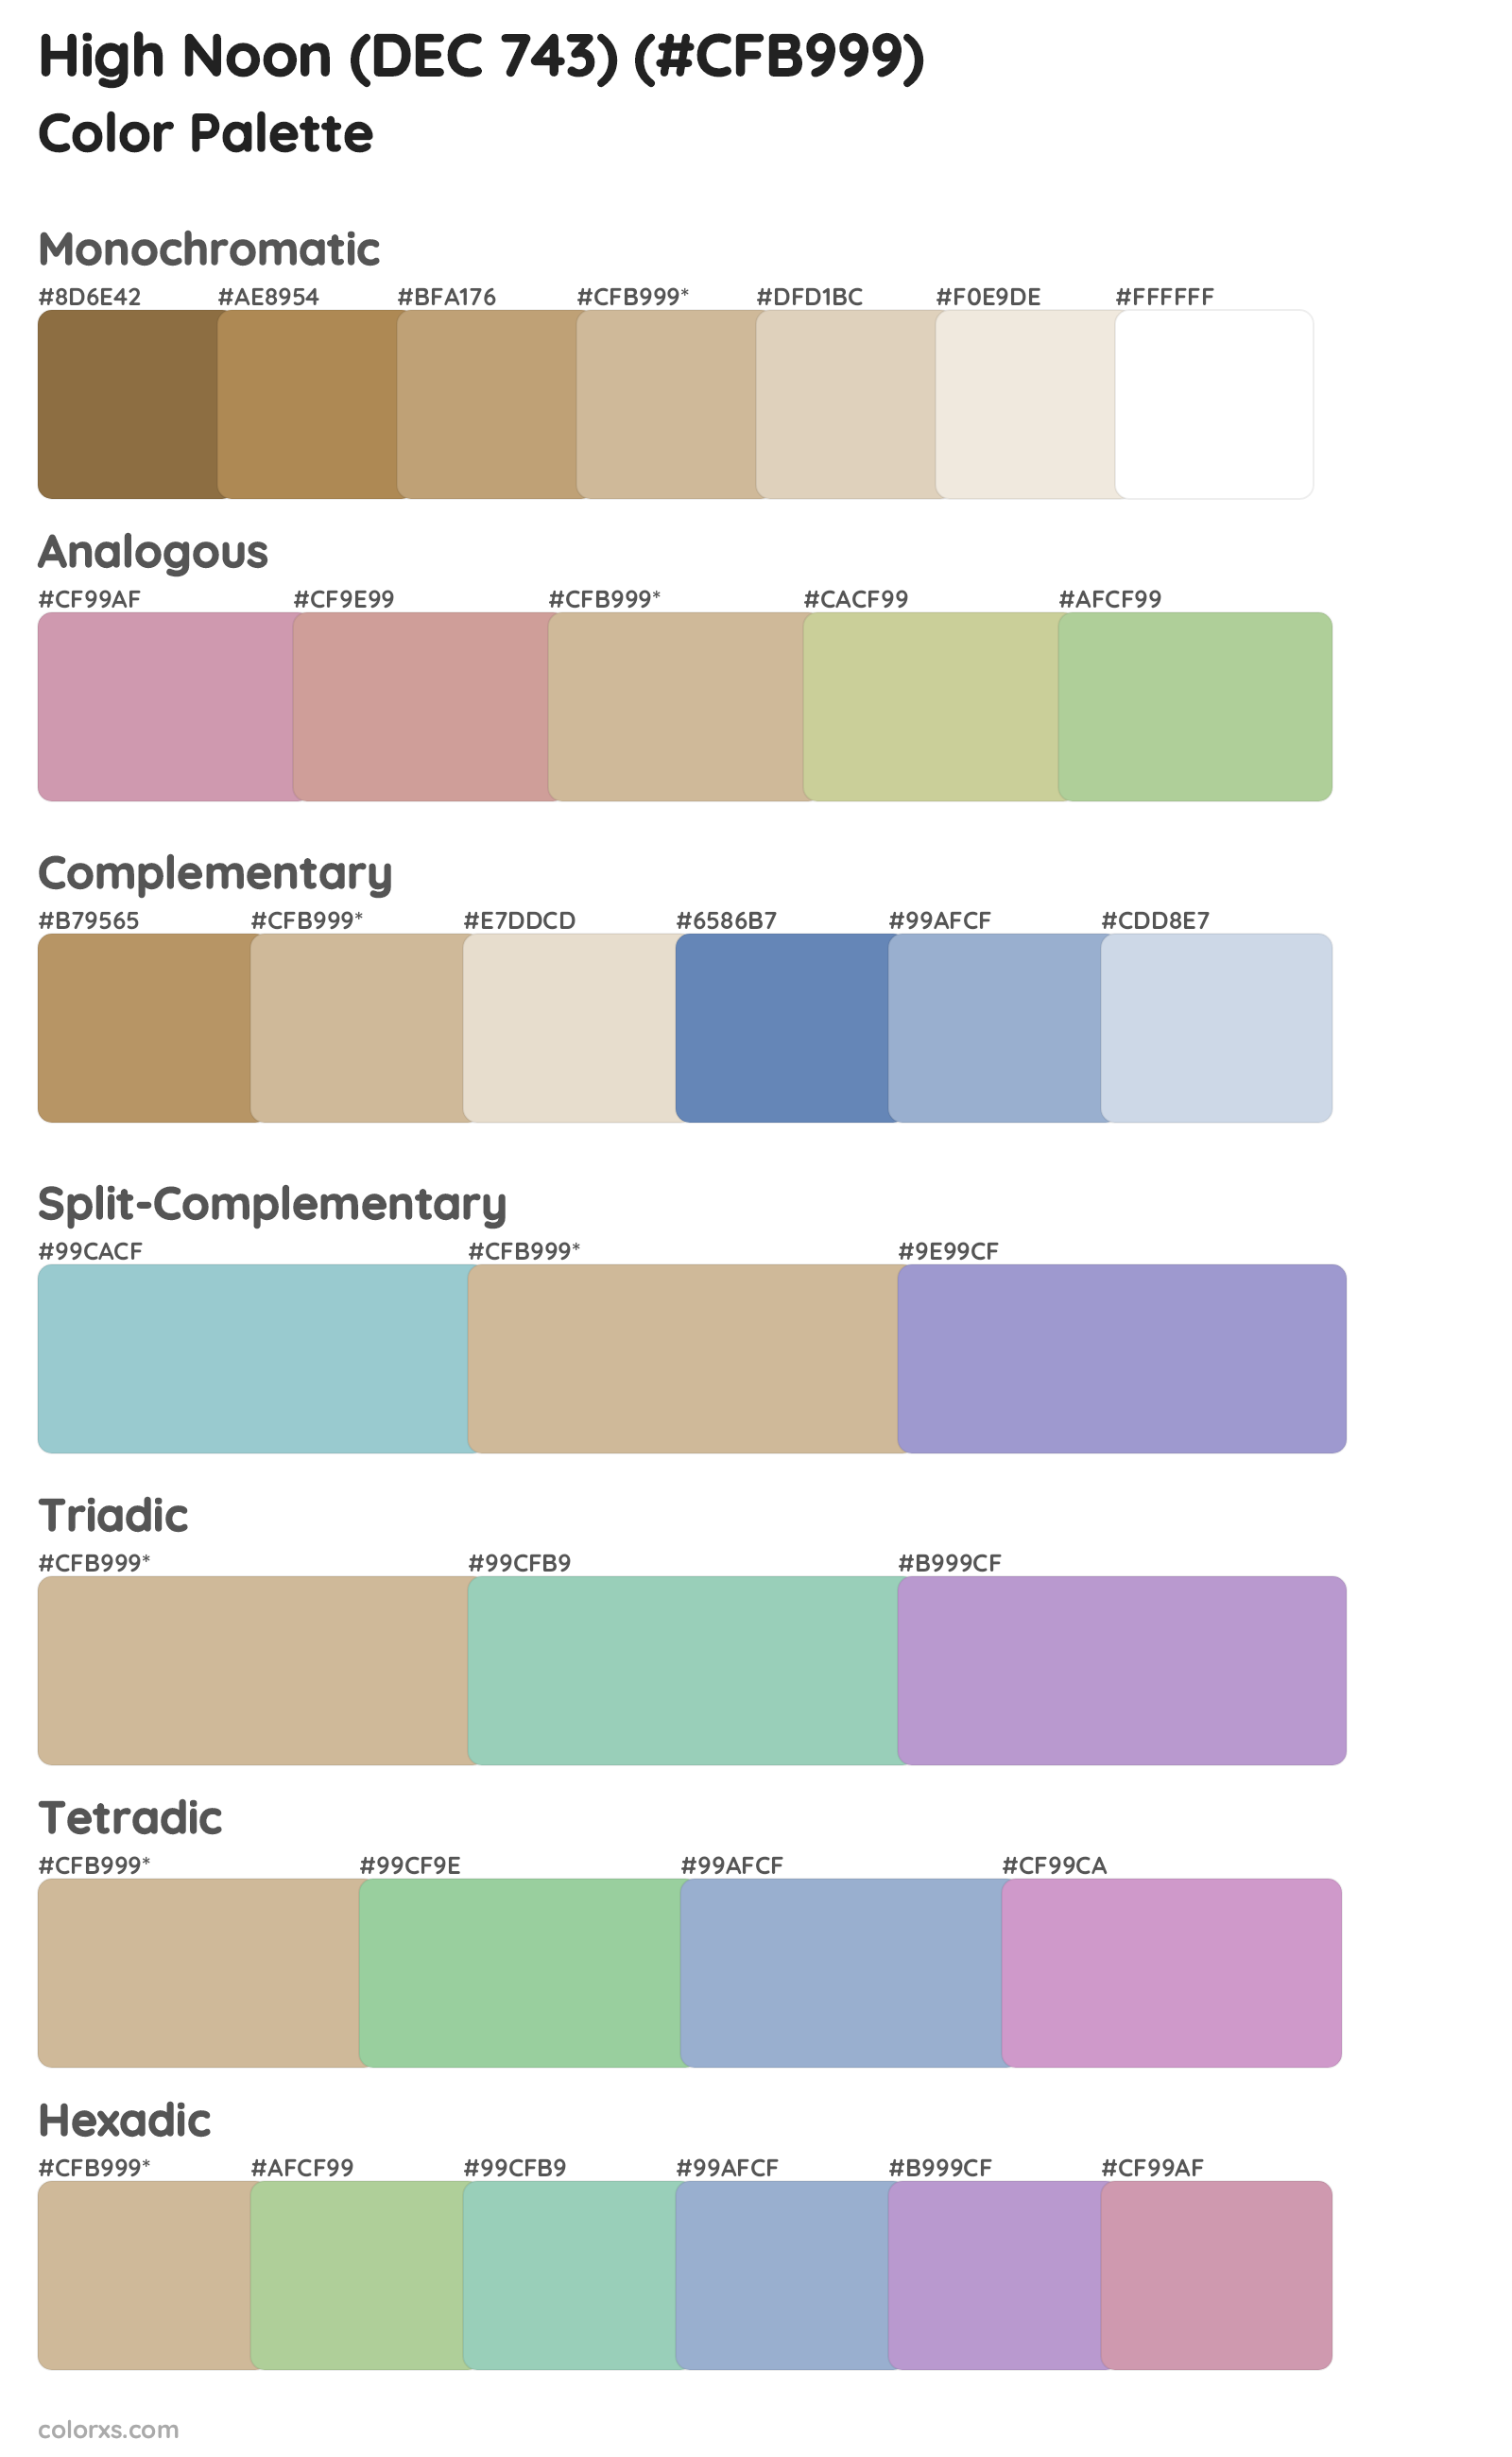 High Noon (DEC 743) Color Scheme Palettes